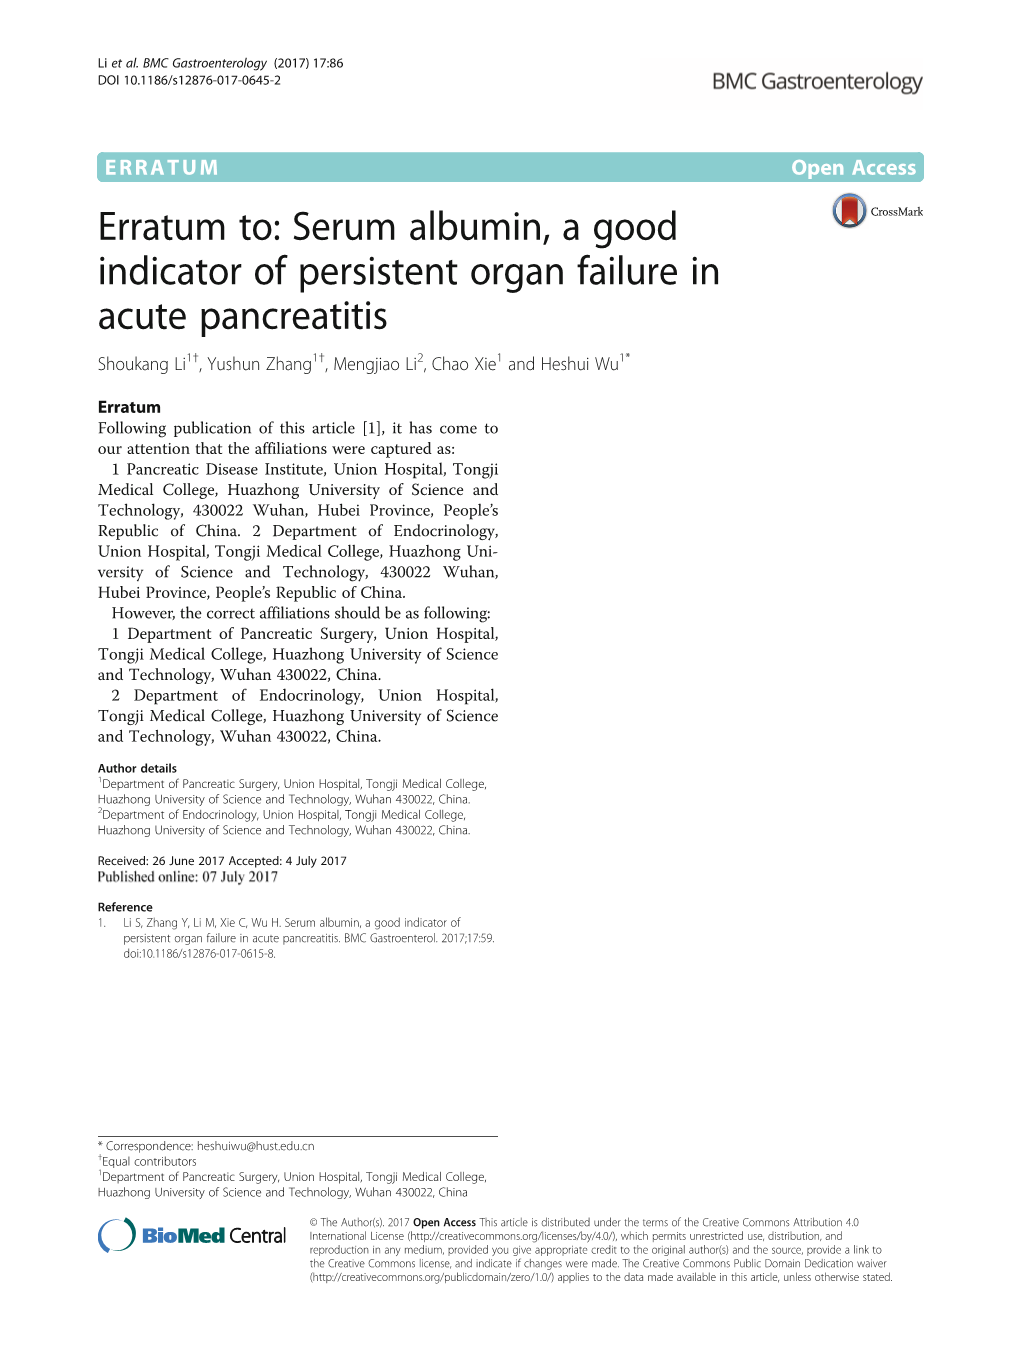 Serum Albumin, a Good Indicator of Persistent Organ Failure in Acute Pancreatitis Shoukang Li1†, Yushun Zhang1†, Mengjiao Li2, Chao Xie1 and Heshui Wu1*